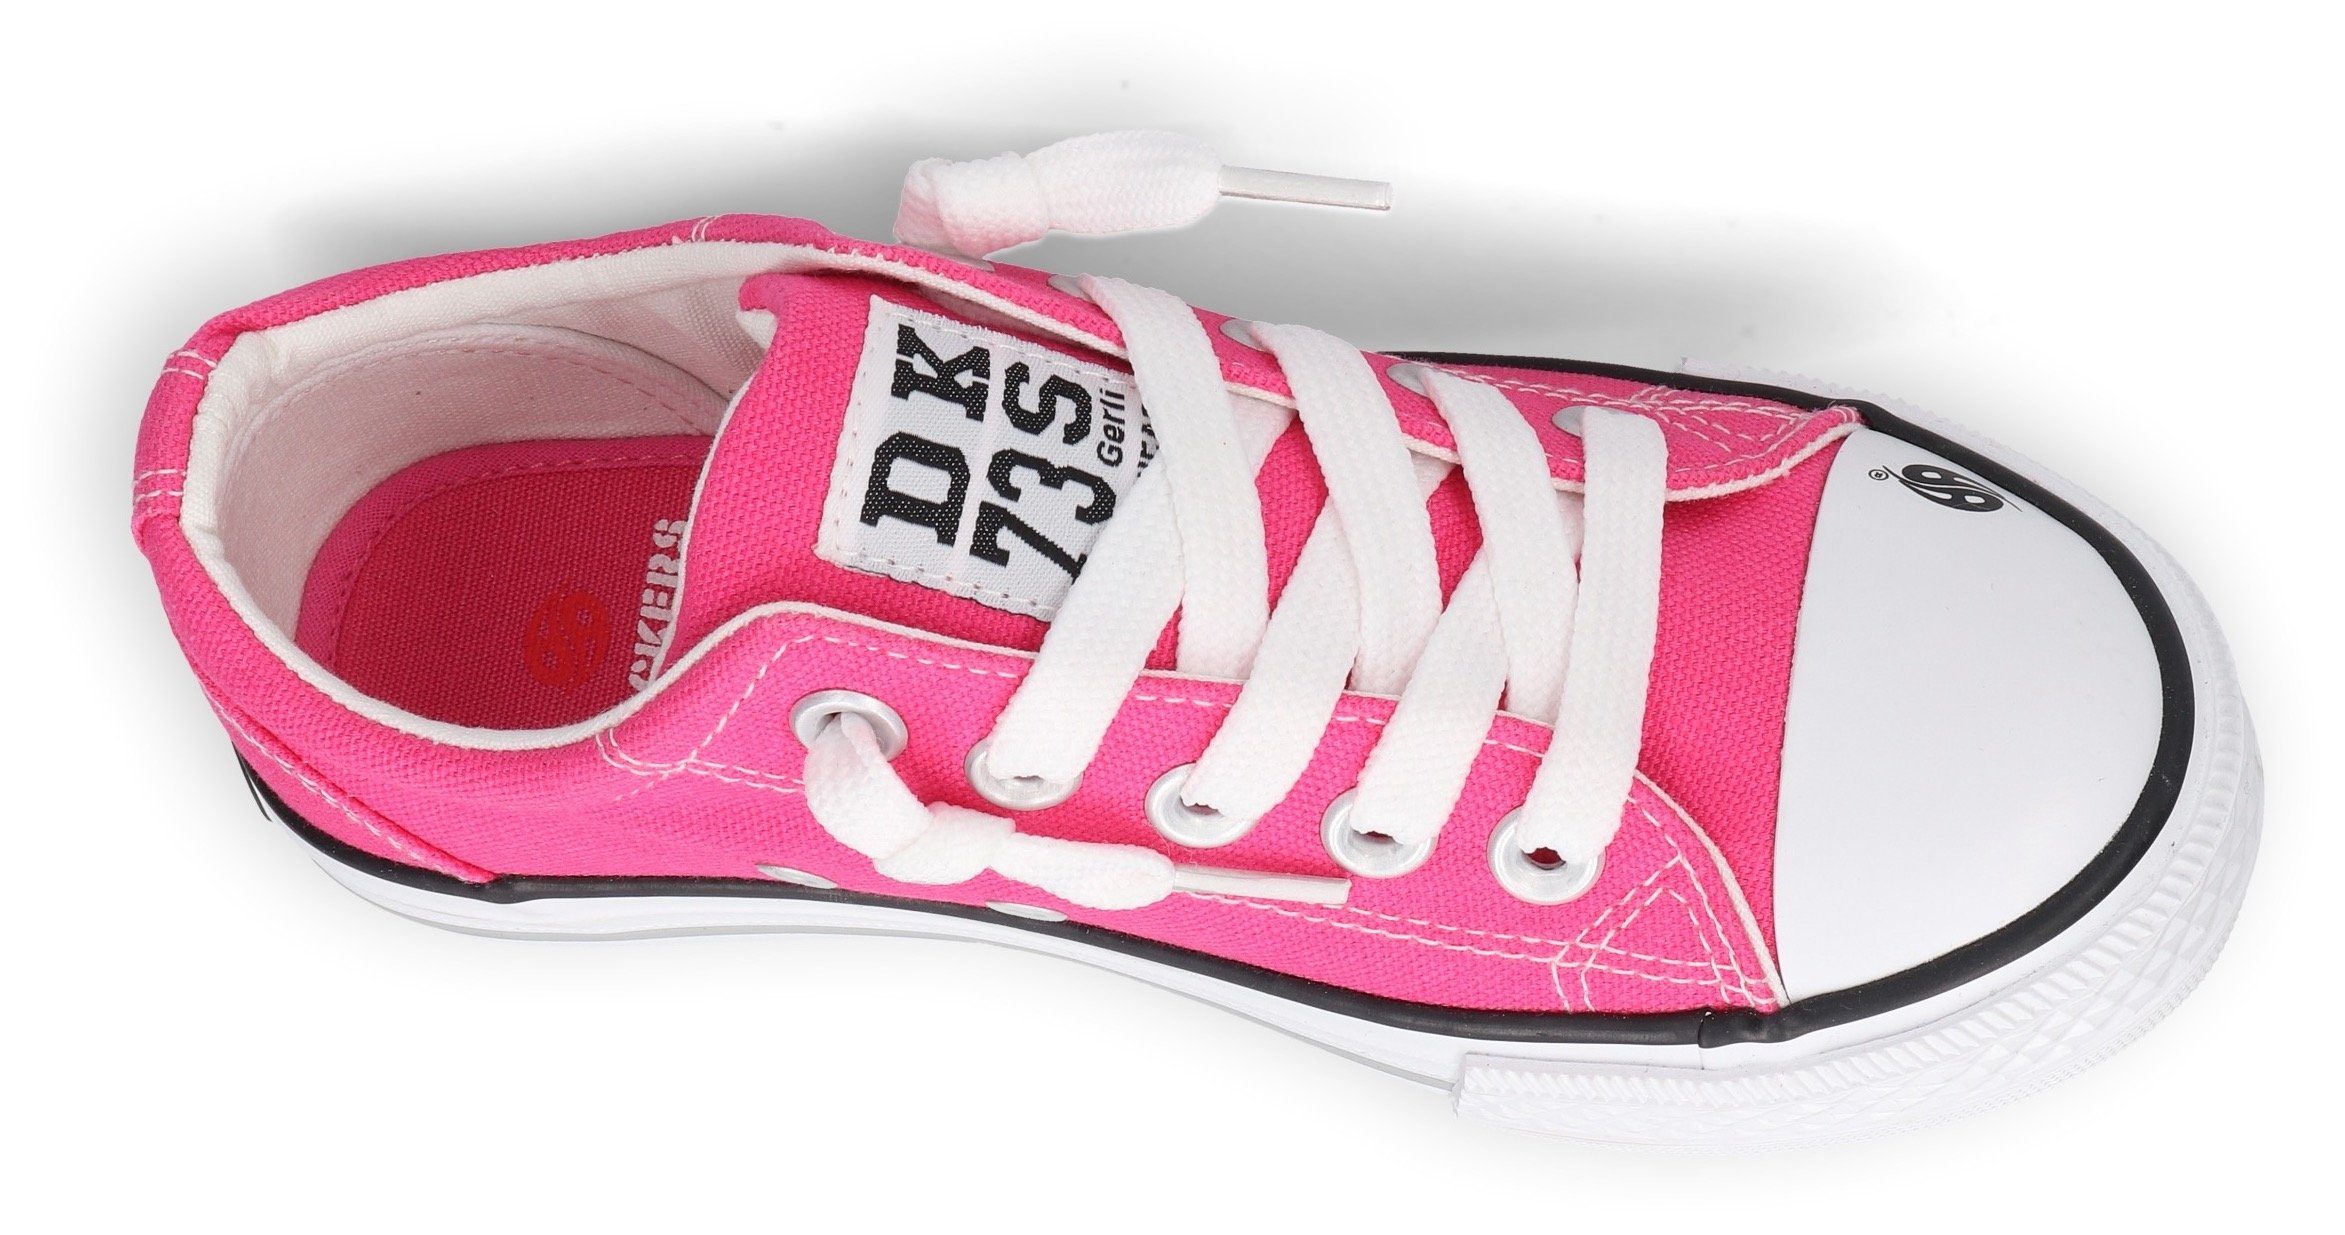 Dockers by Slip-On Optik Gerli in pink klassischer Sneaker